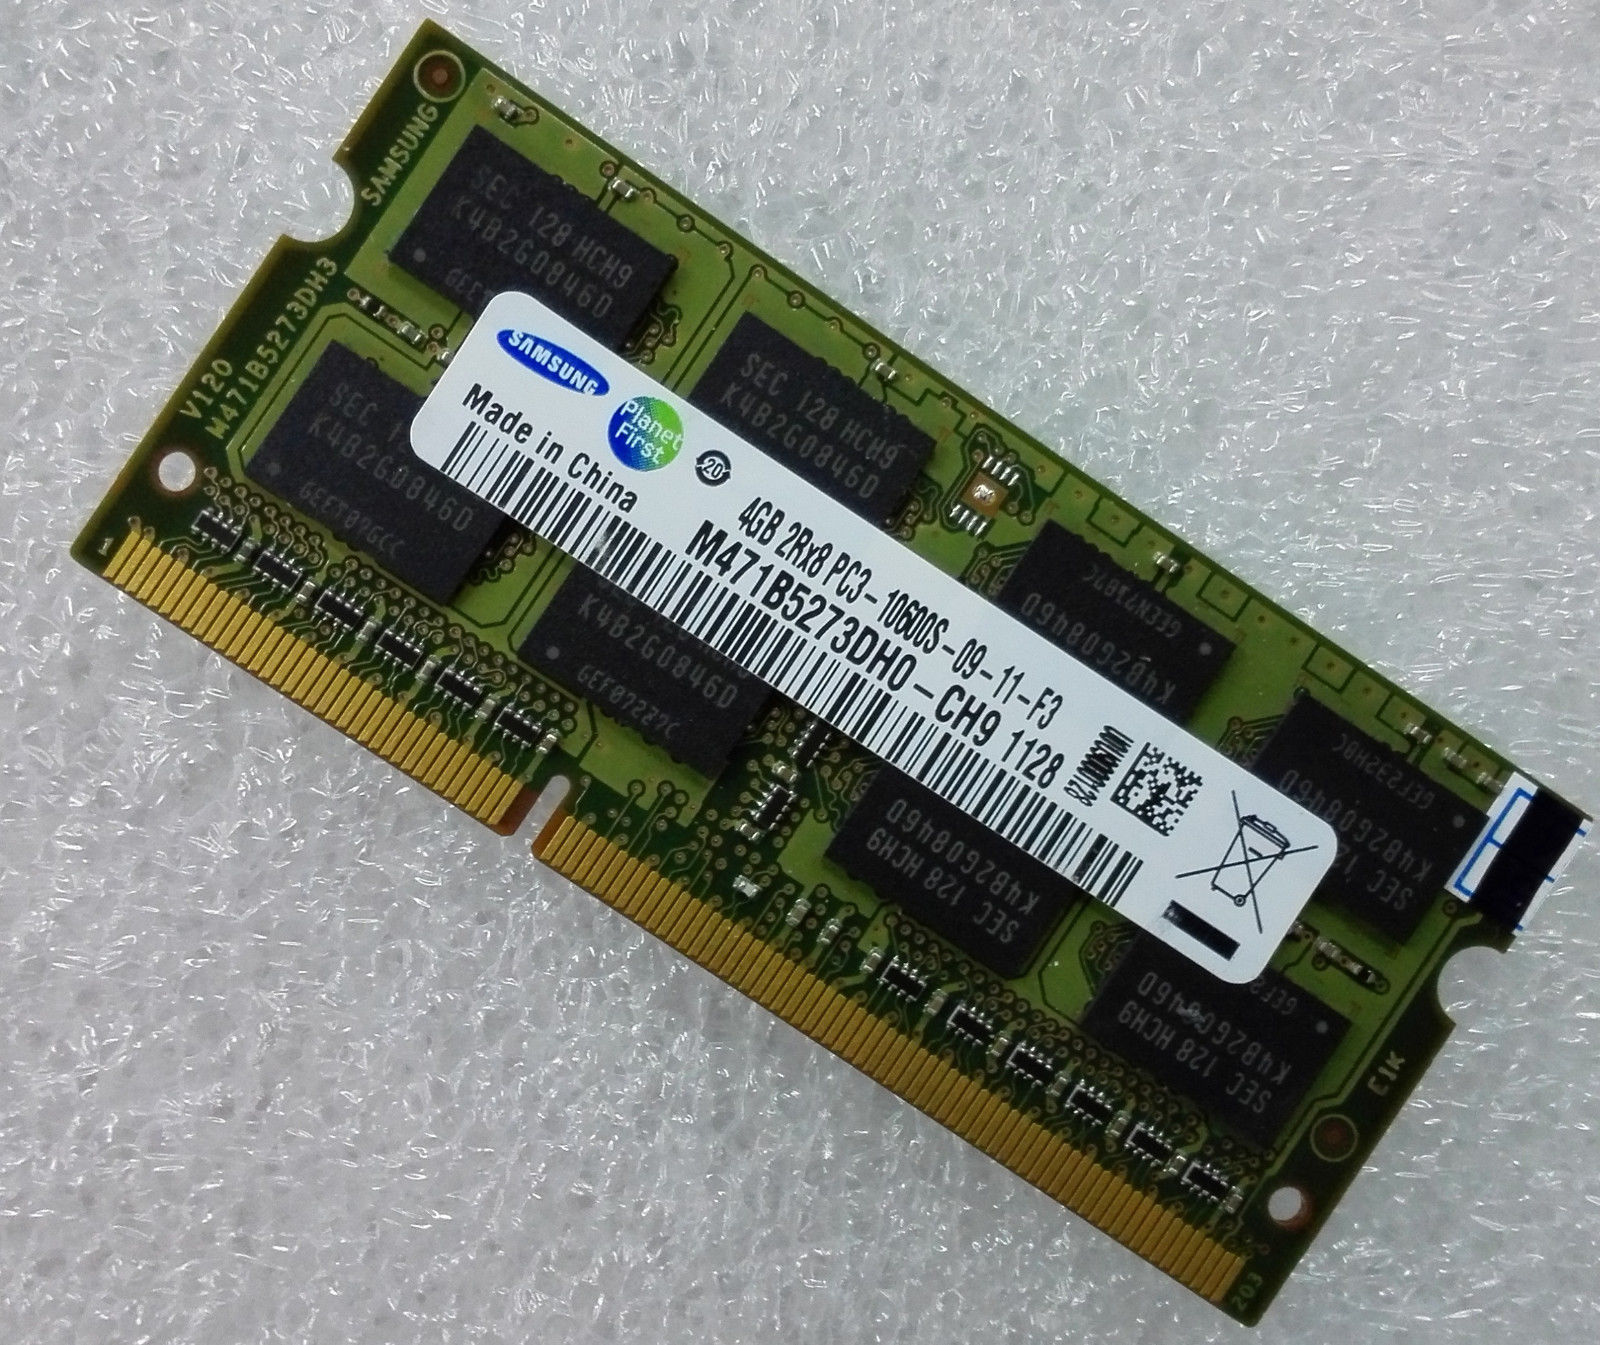 4GB Samsung PC3-10600 DDR3-1333 204-pin SODIMM (p/n SAM-4GB-DDR3